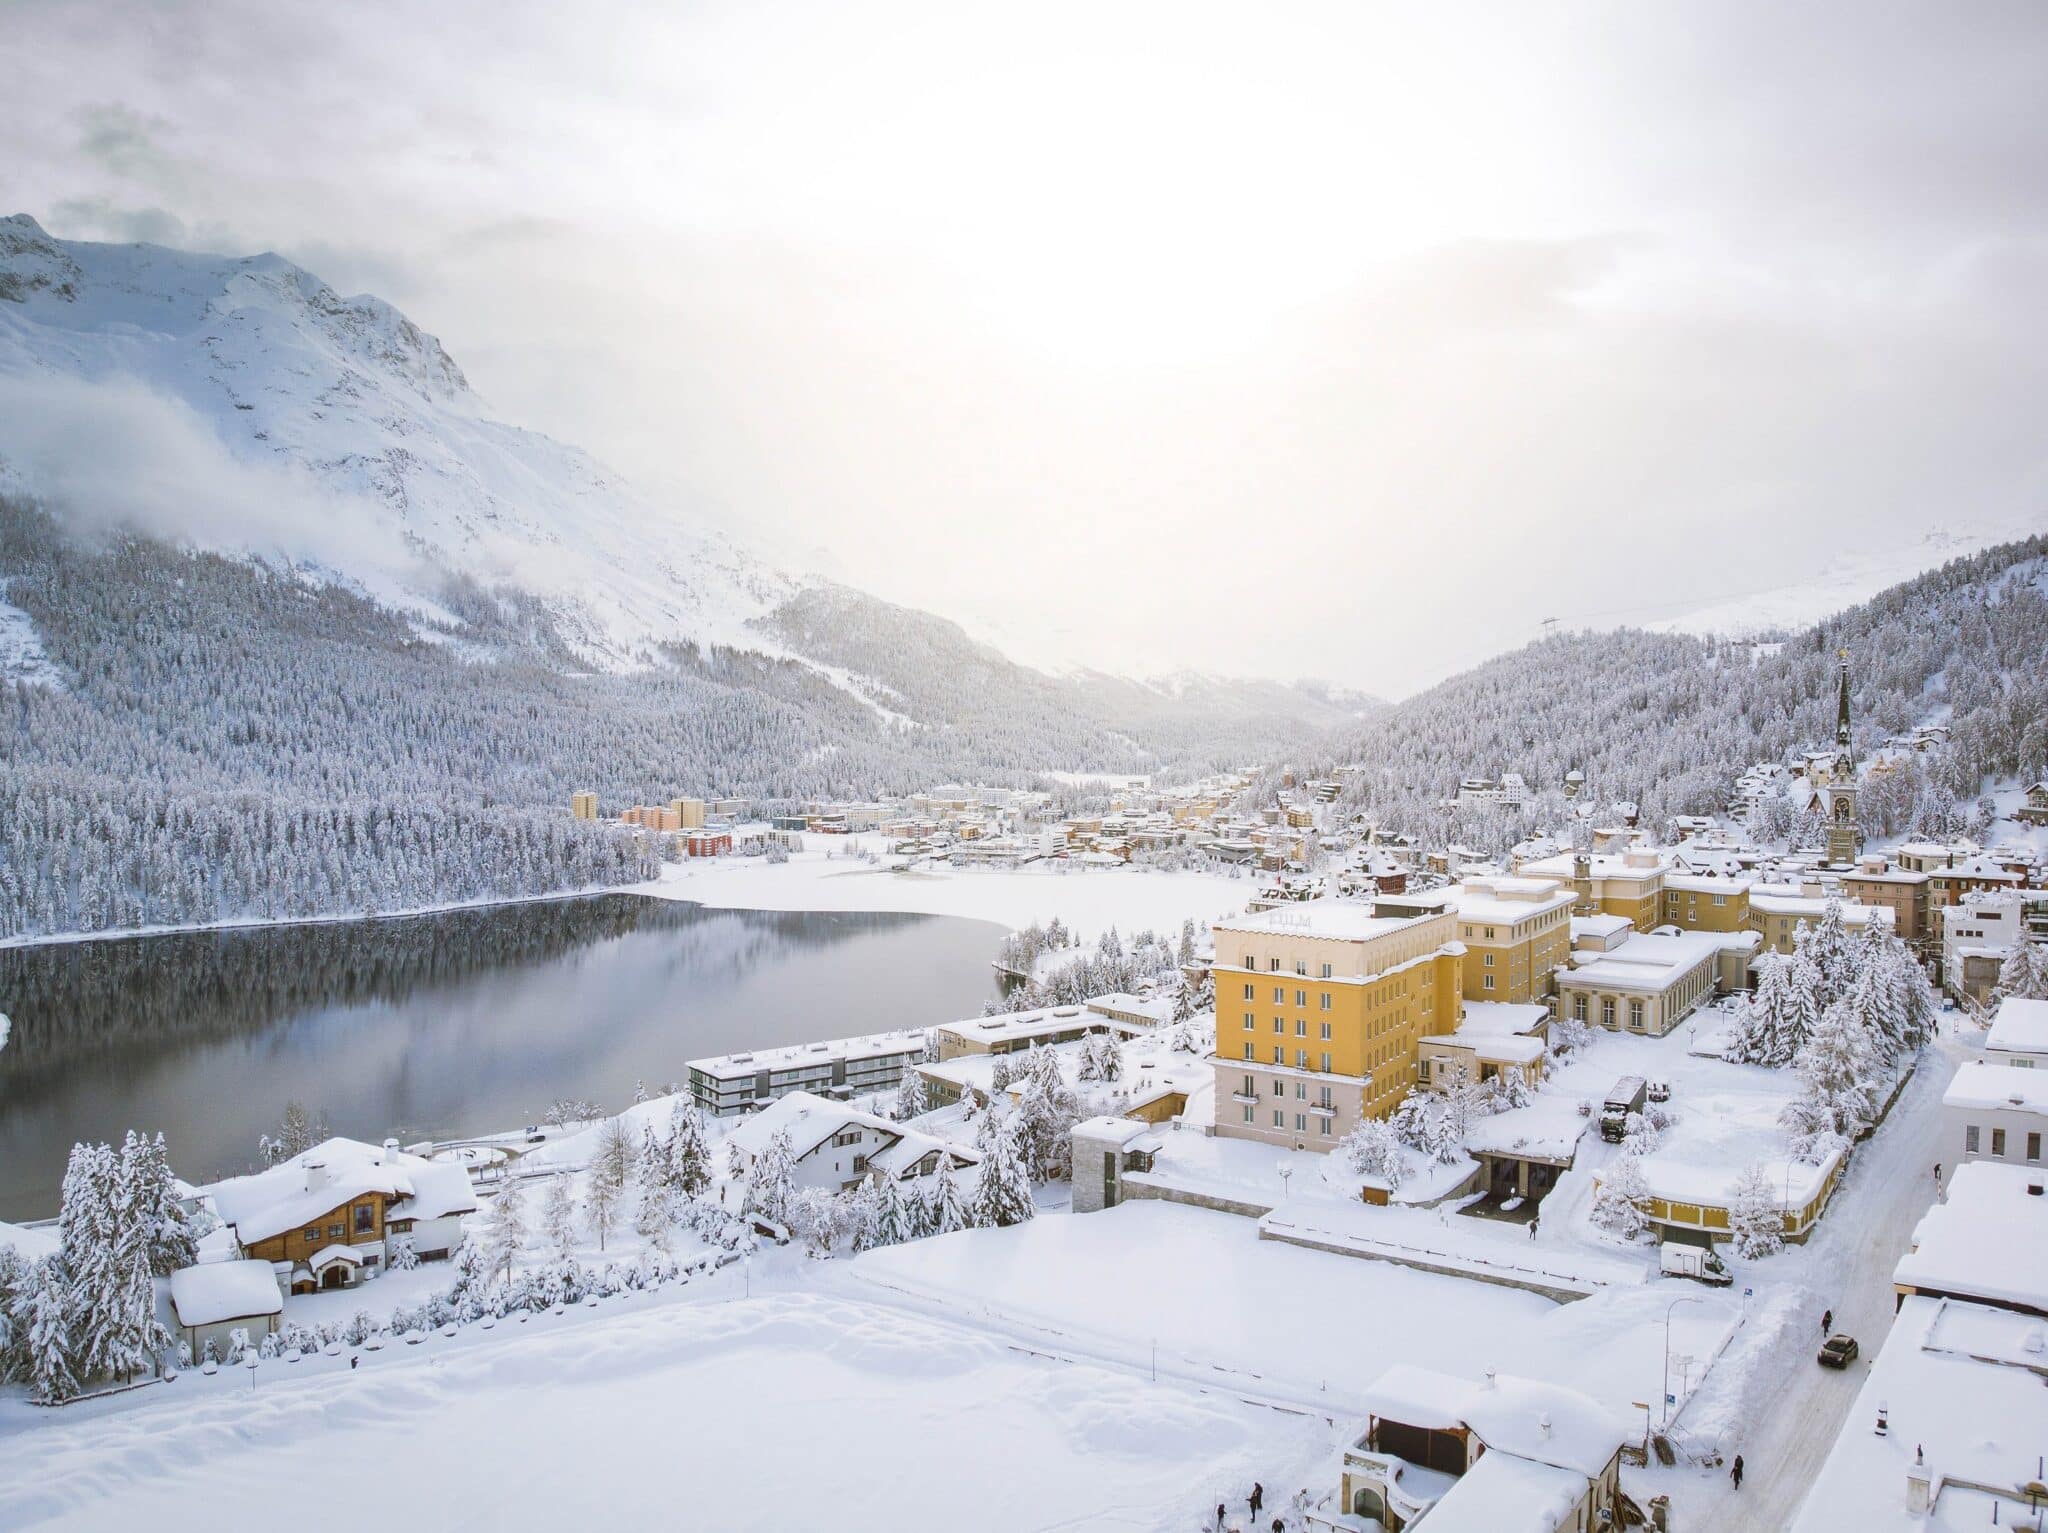 Розкішний готель Kulm St Moritz примітний цікавою історією - його відкрив у 1856 році Йоханнес Бадрутт, людина, яка започаткувала зимовий гірський туризм. З самого відкриття в готелі Kulm панує атмосфера елегантності та традицій.